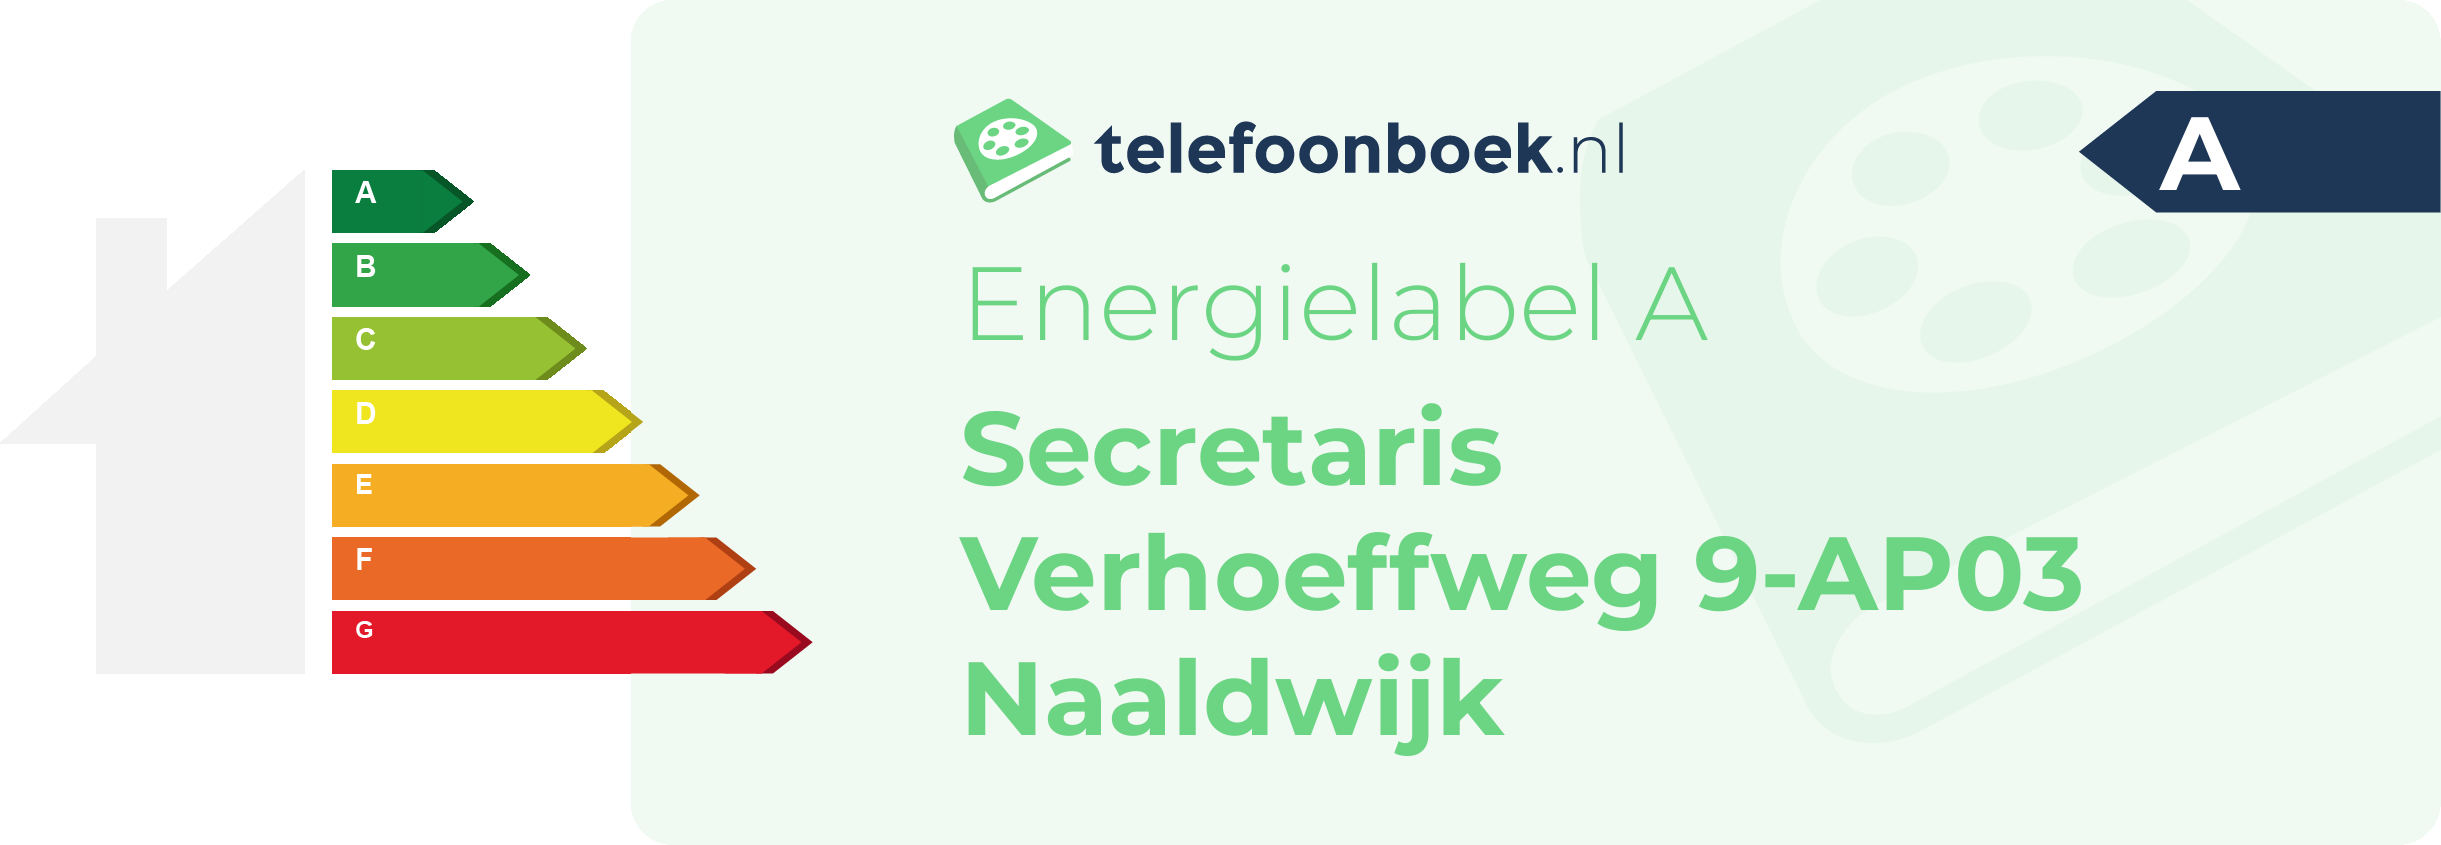 Energielabel Secretaris Verhoeffweg 9-AP03 Naaldwijk